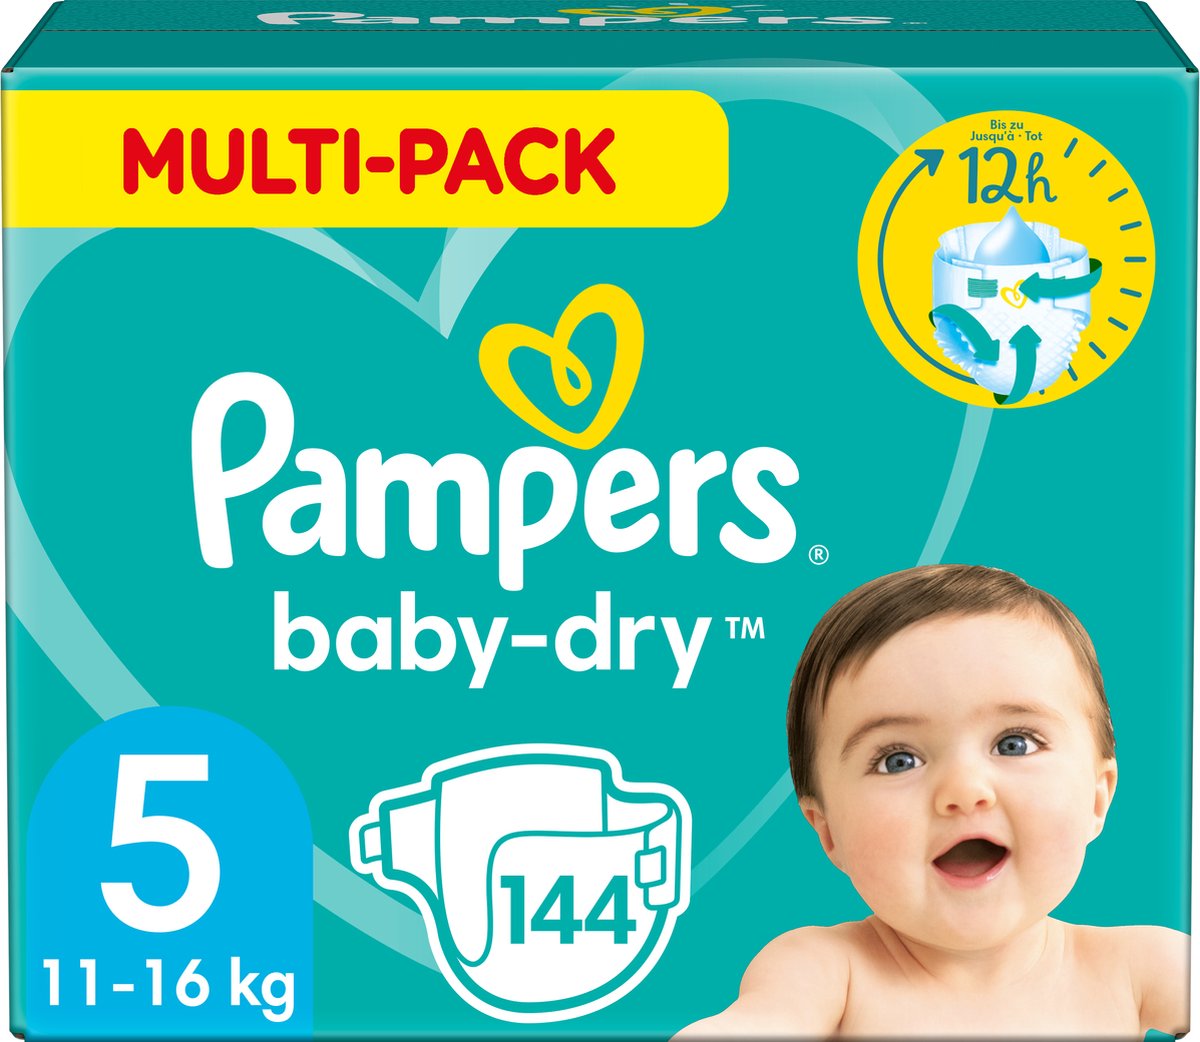 Pampers Baby-Dry Luiers - Maat 5 (11-16 kg) - 144 stuks - Multi-Pack - Pampers